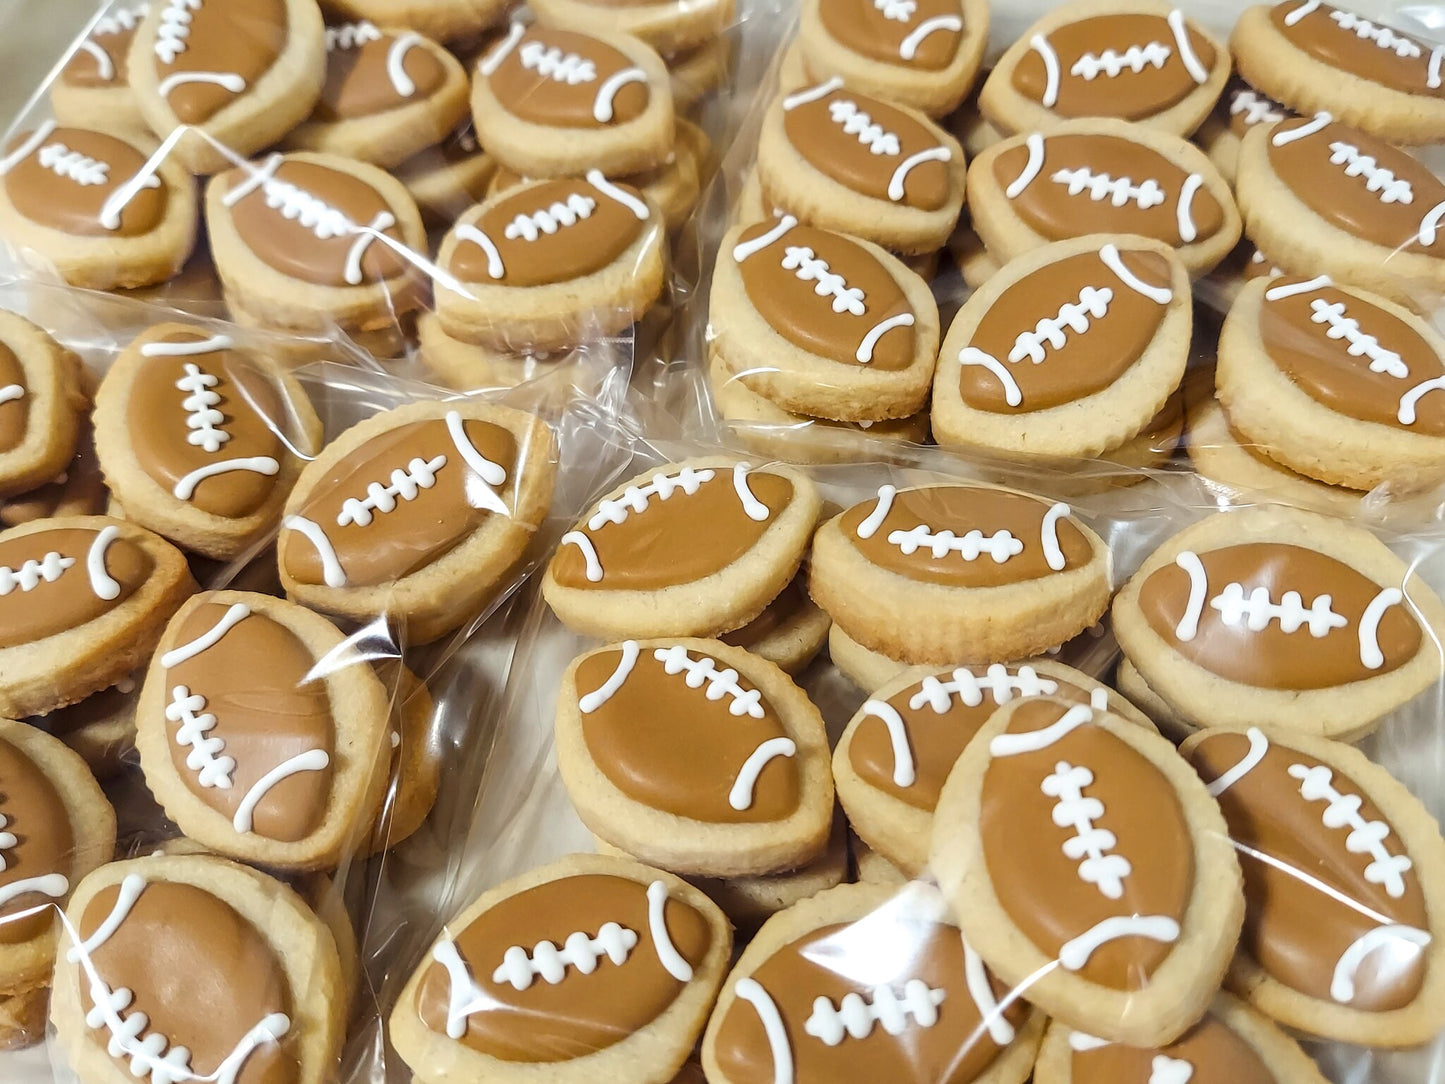 Mini Football Cookies (3 dozen)